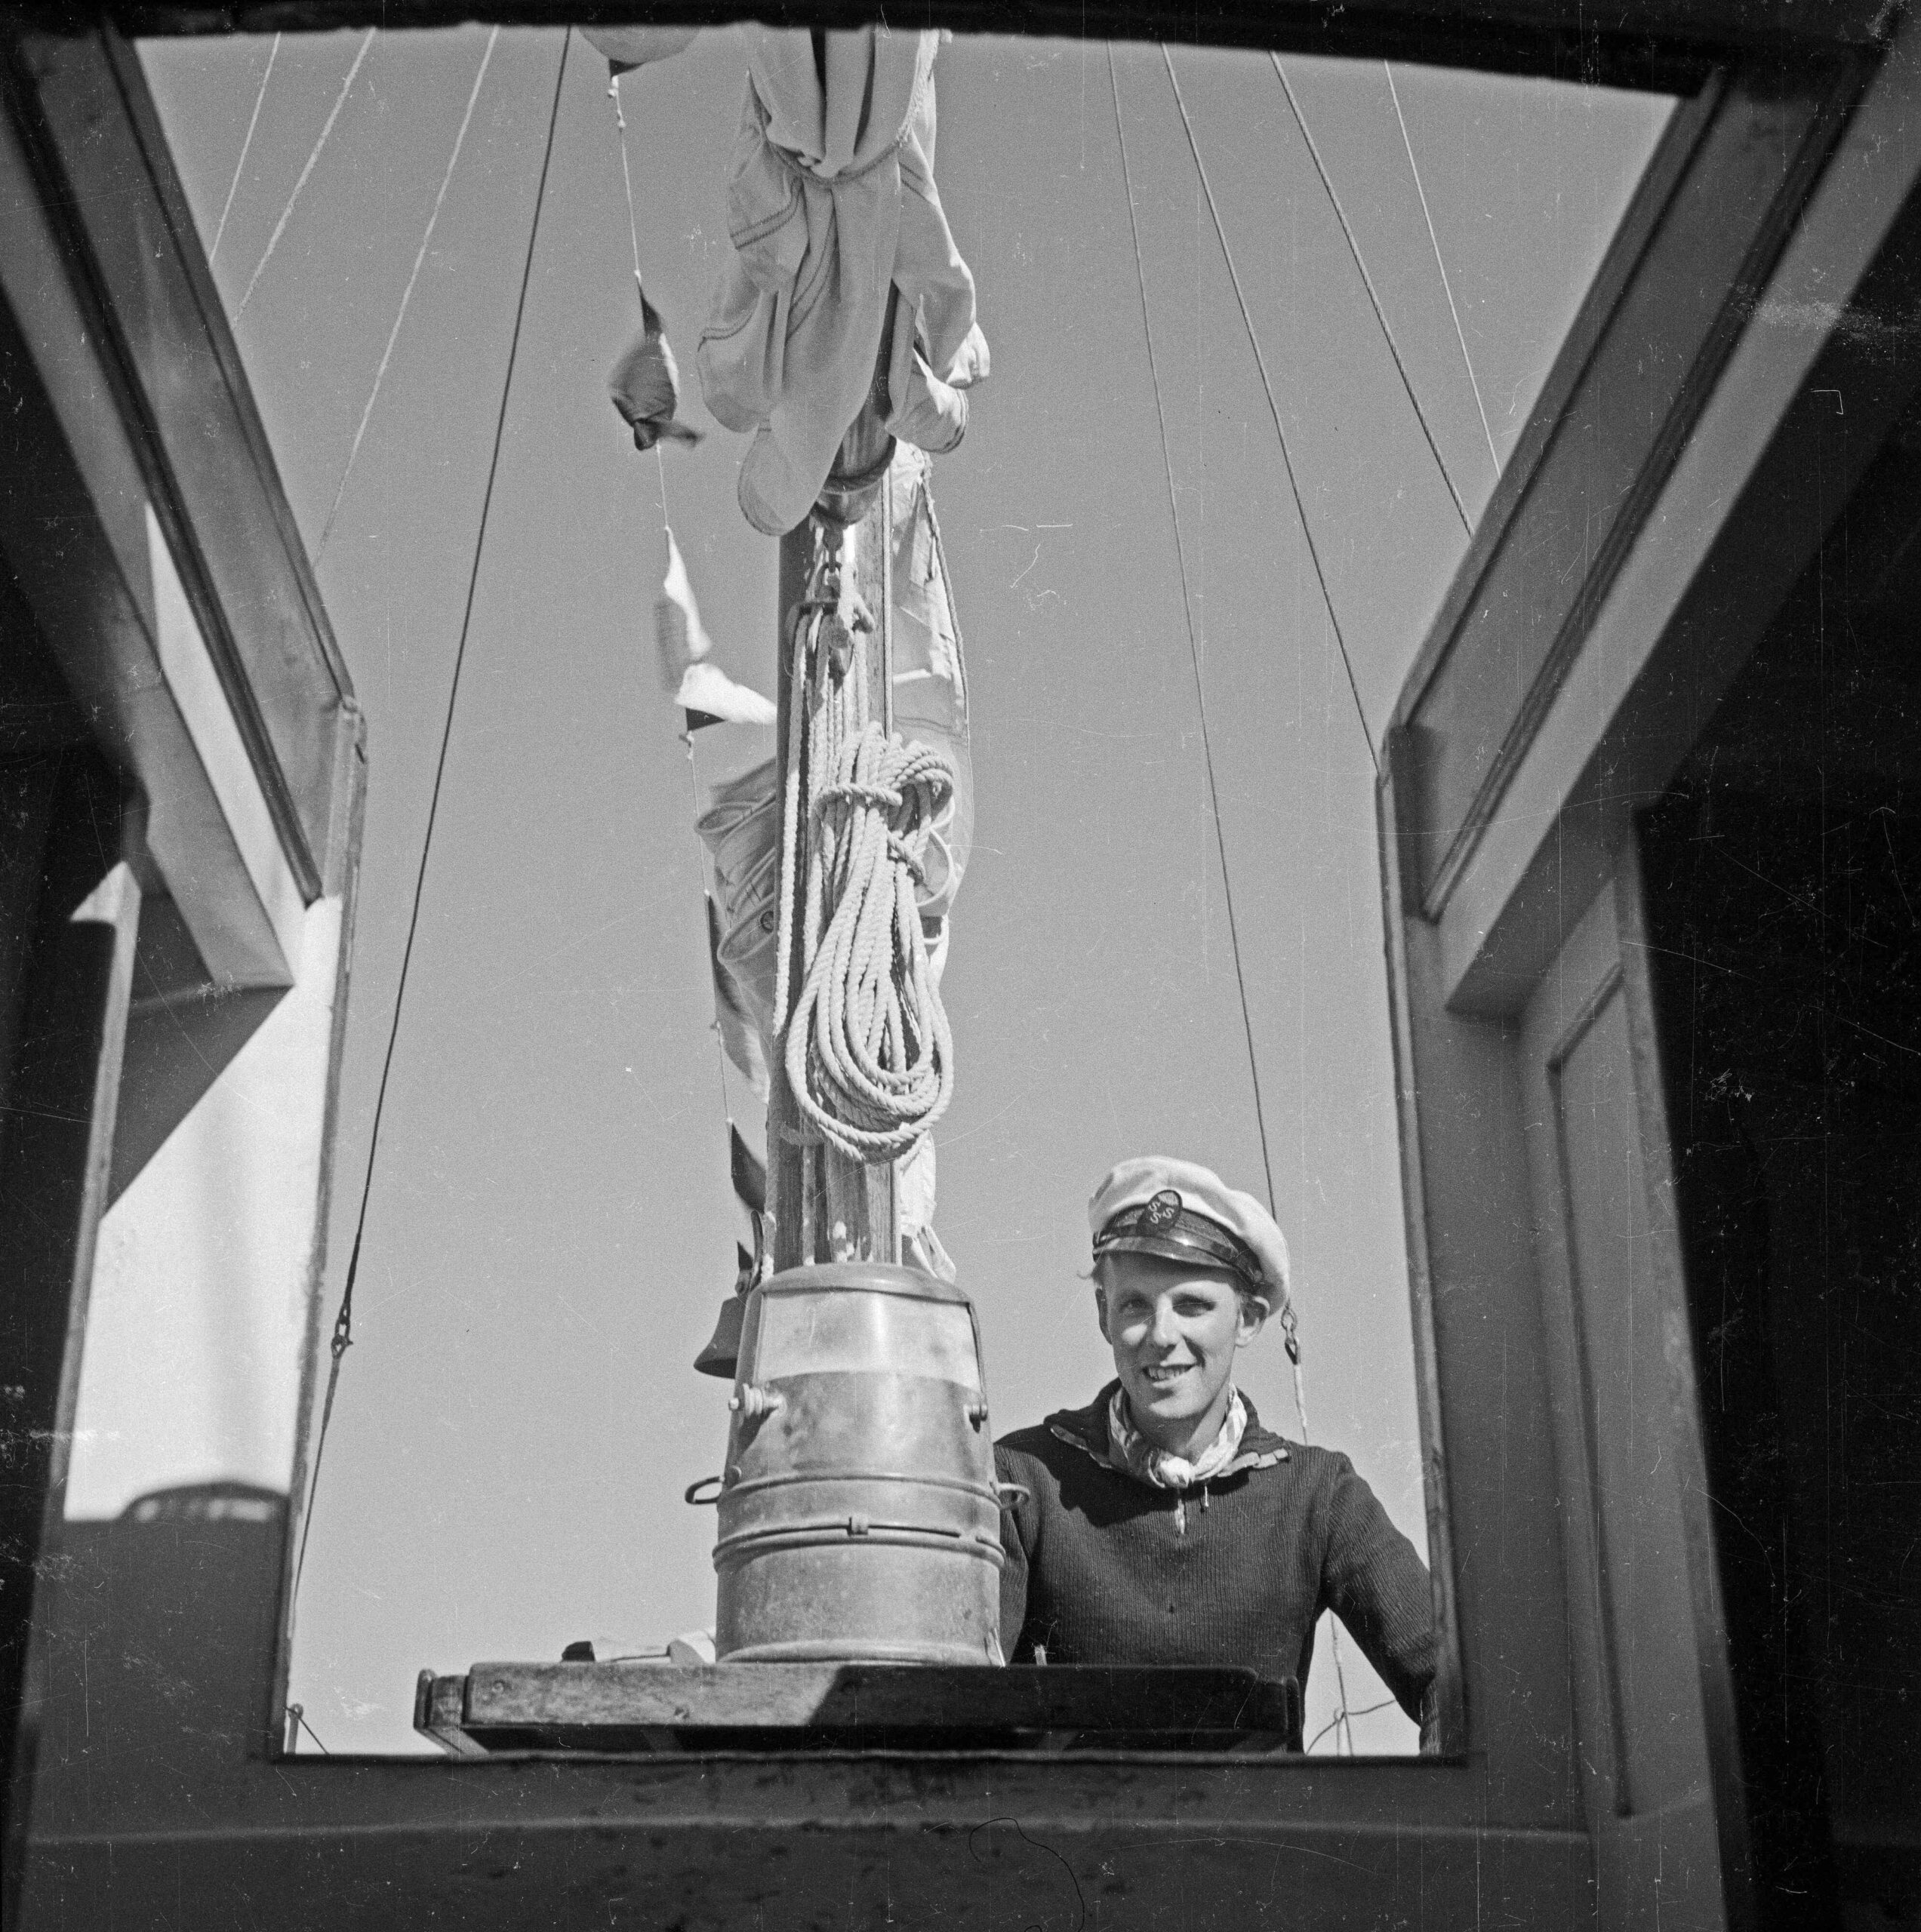 Göran Schildt in the Royal Swedish Sailing Association (KSSS) hat at Daphne. Photo © Svenska litteratursällskapet in Finland, SLSA 1150